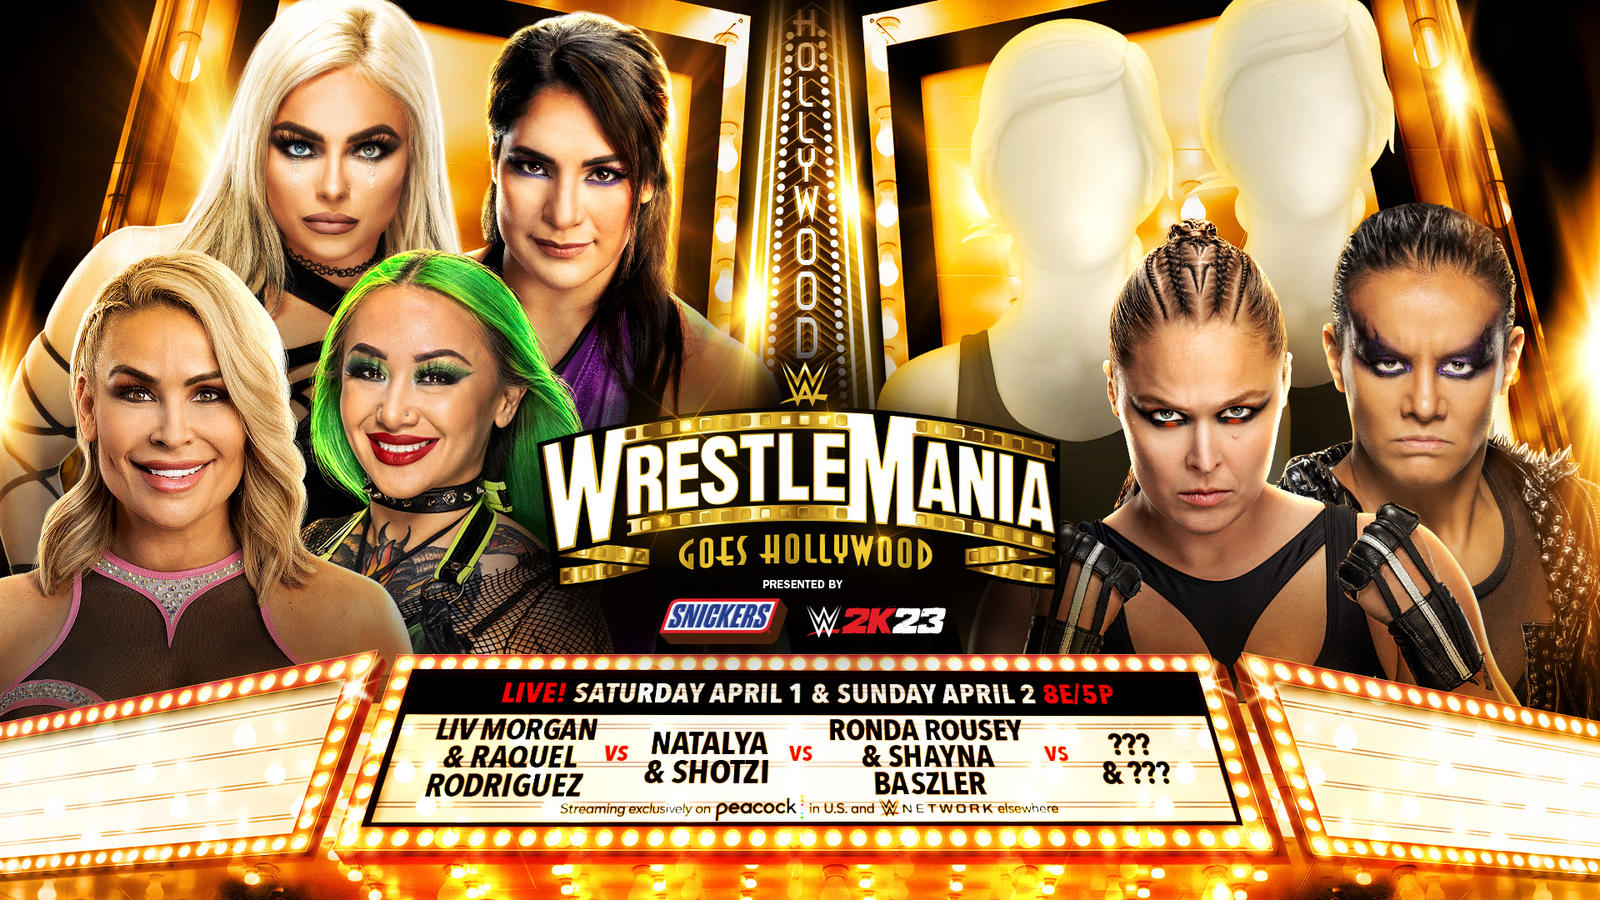 Большое изменение произошло в матче на WrestleMania; Определился полный состав участниц женского показательного матча